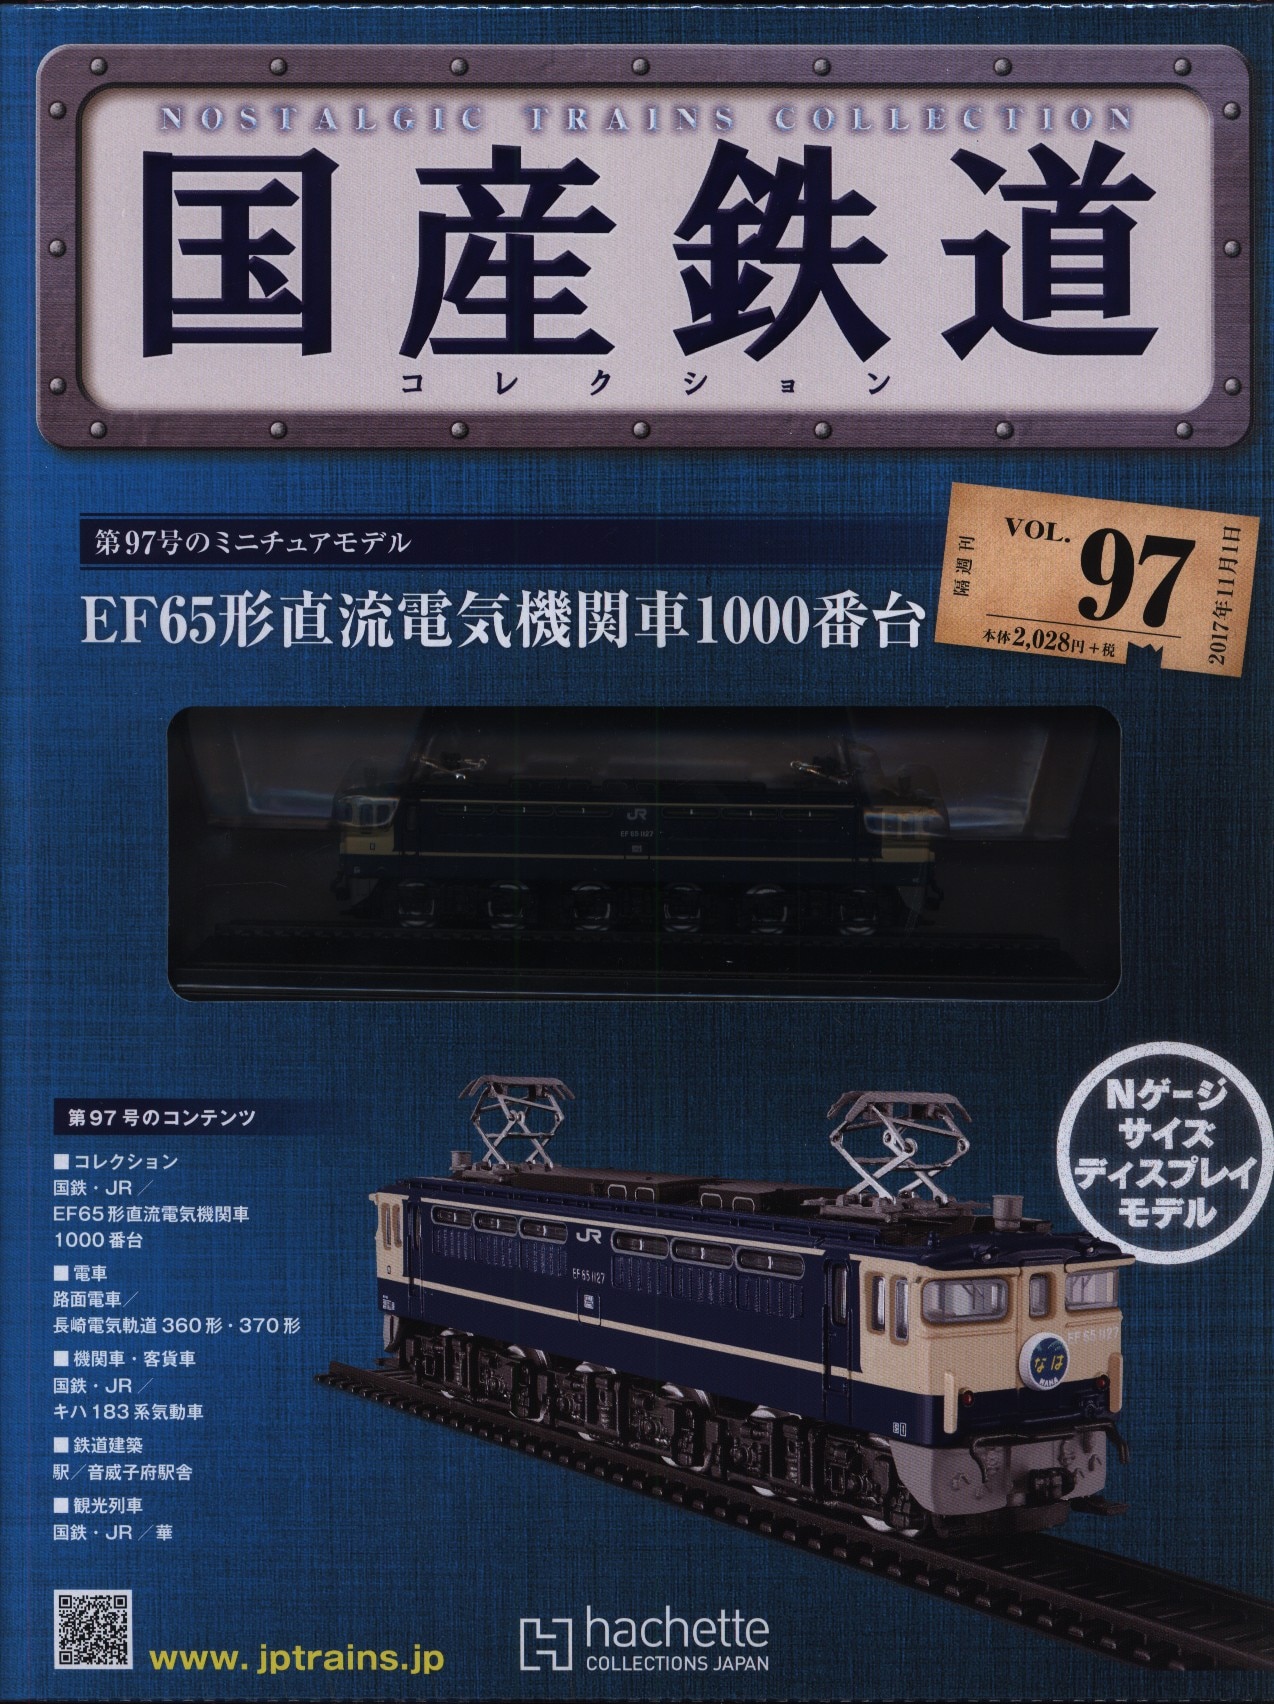 国産鉄道コレクション - 鉄道模型